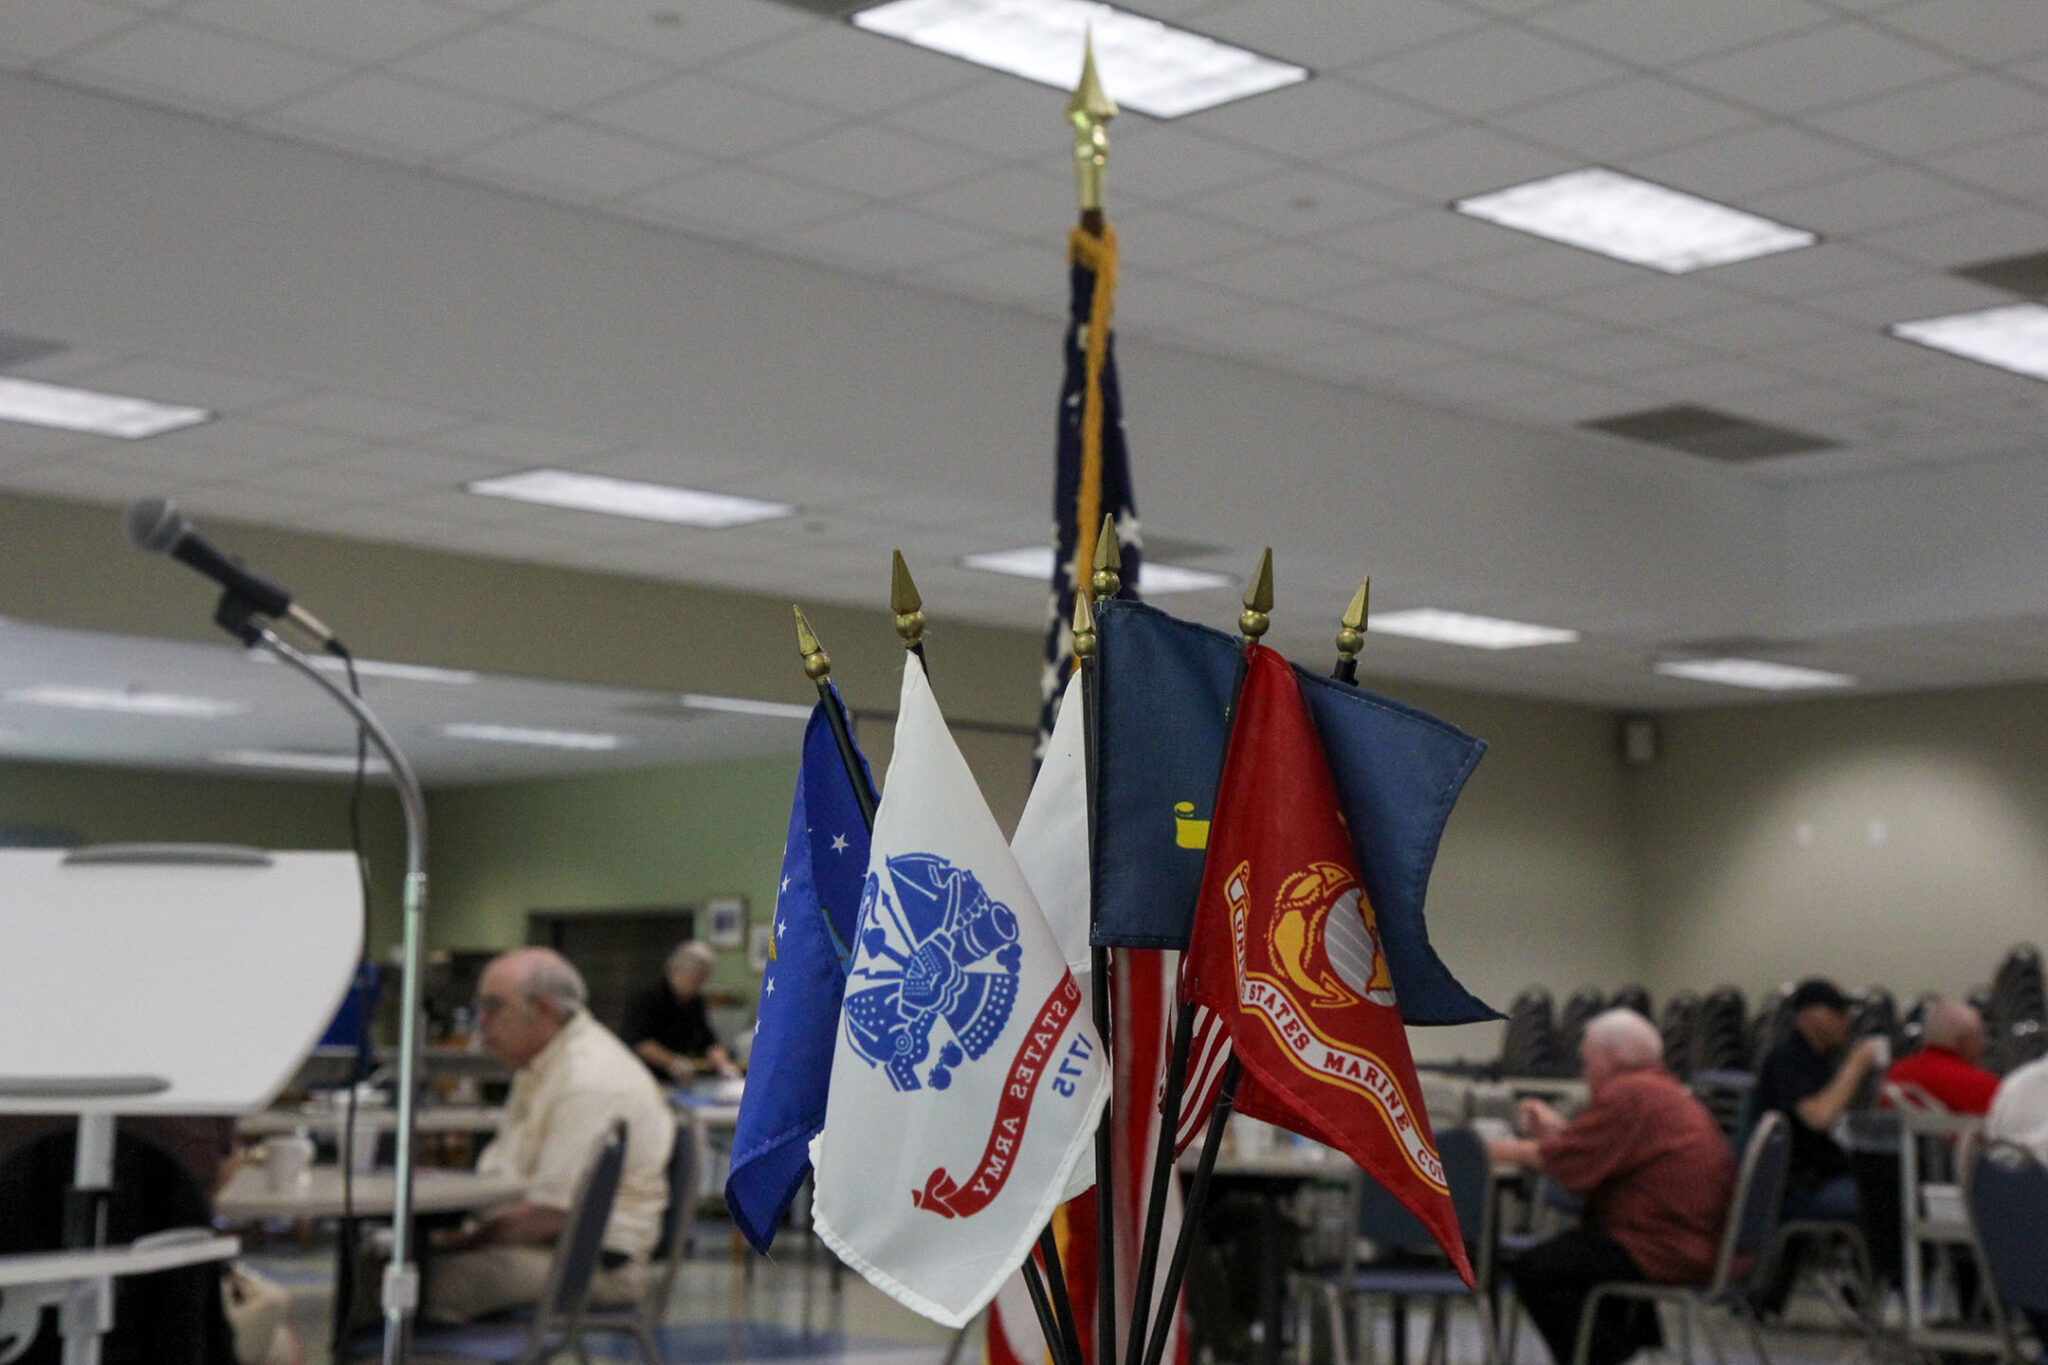 Veterans Breakfast at Senior Center May 5